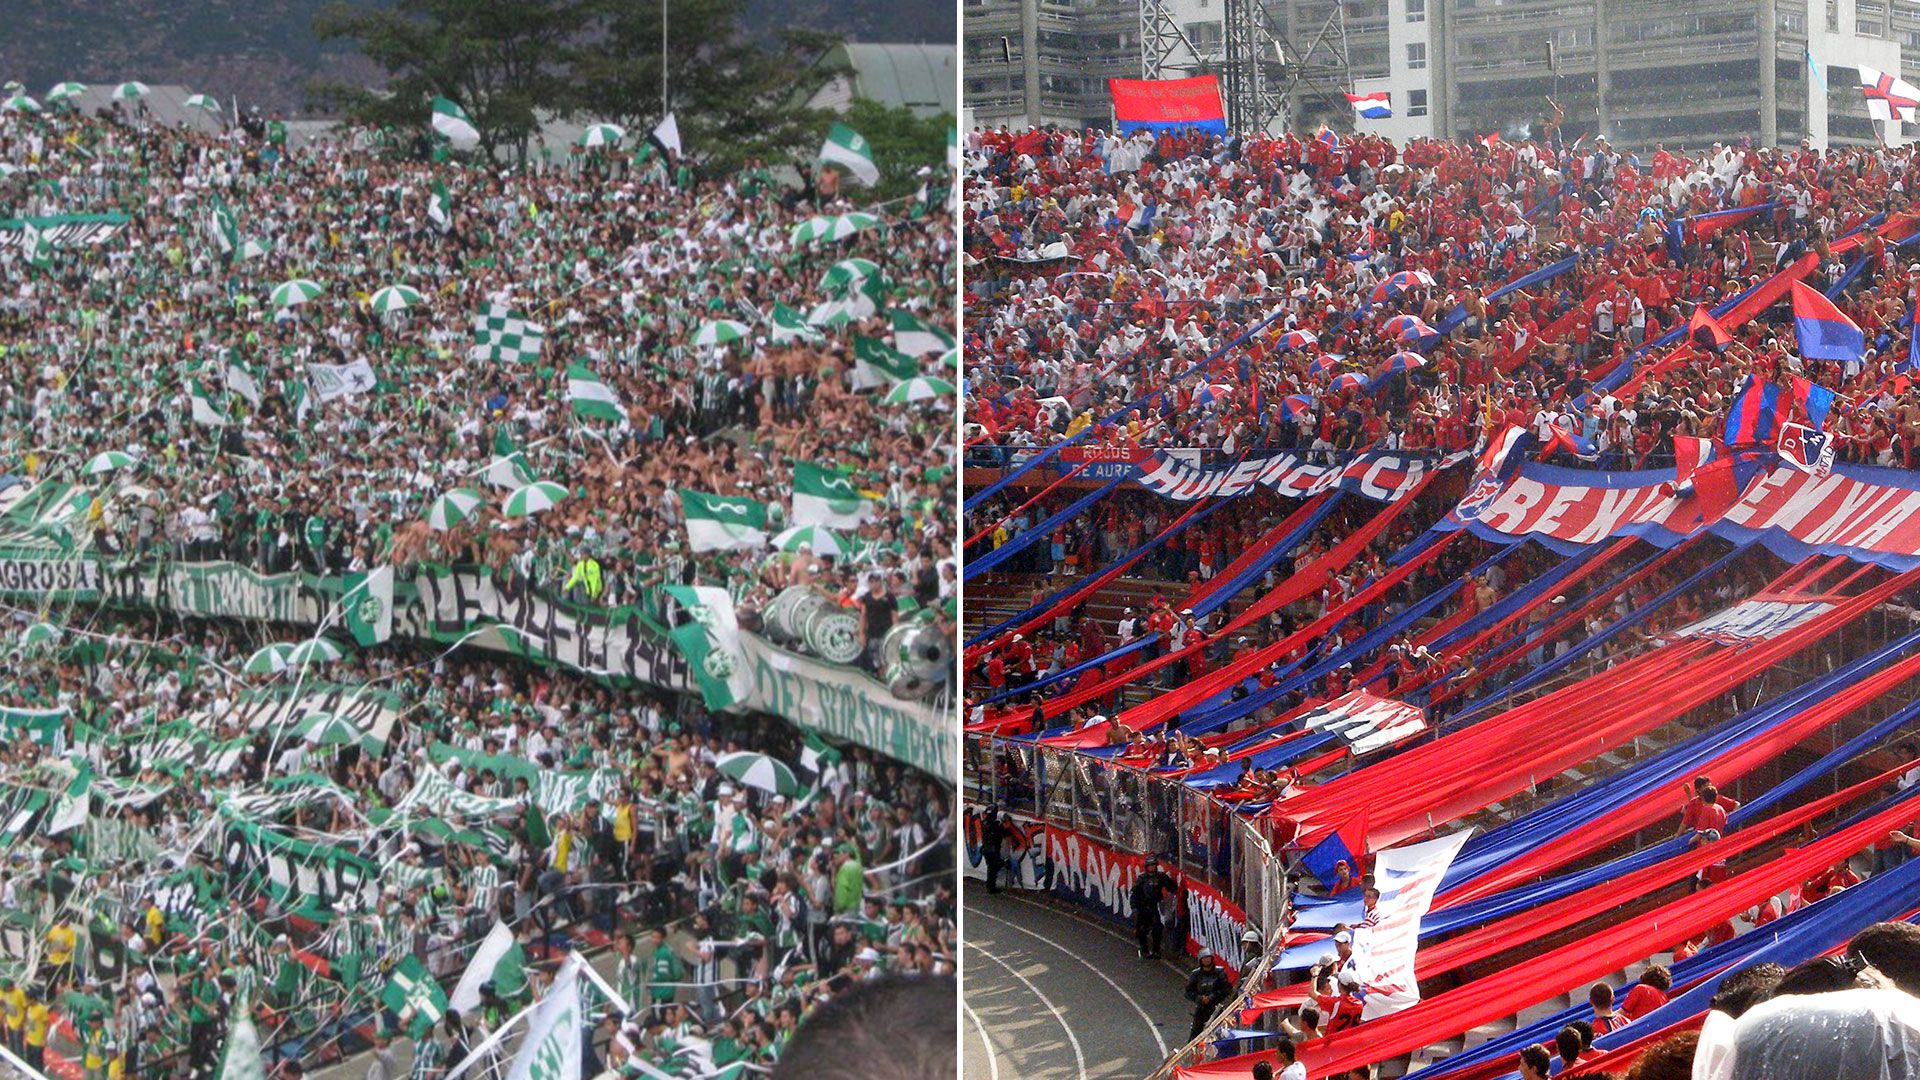 Las hinchadas de Atlético Nacional e Independiente Medellín lucían irreconciliables. Hoy hasta dan recitales conjuntos